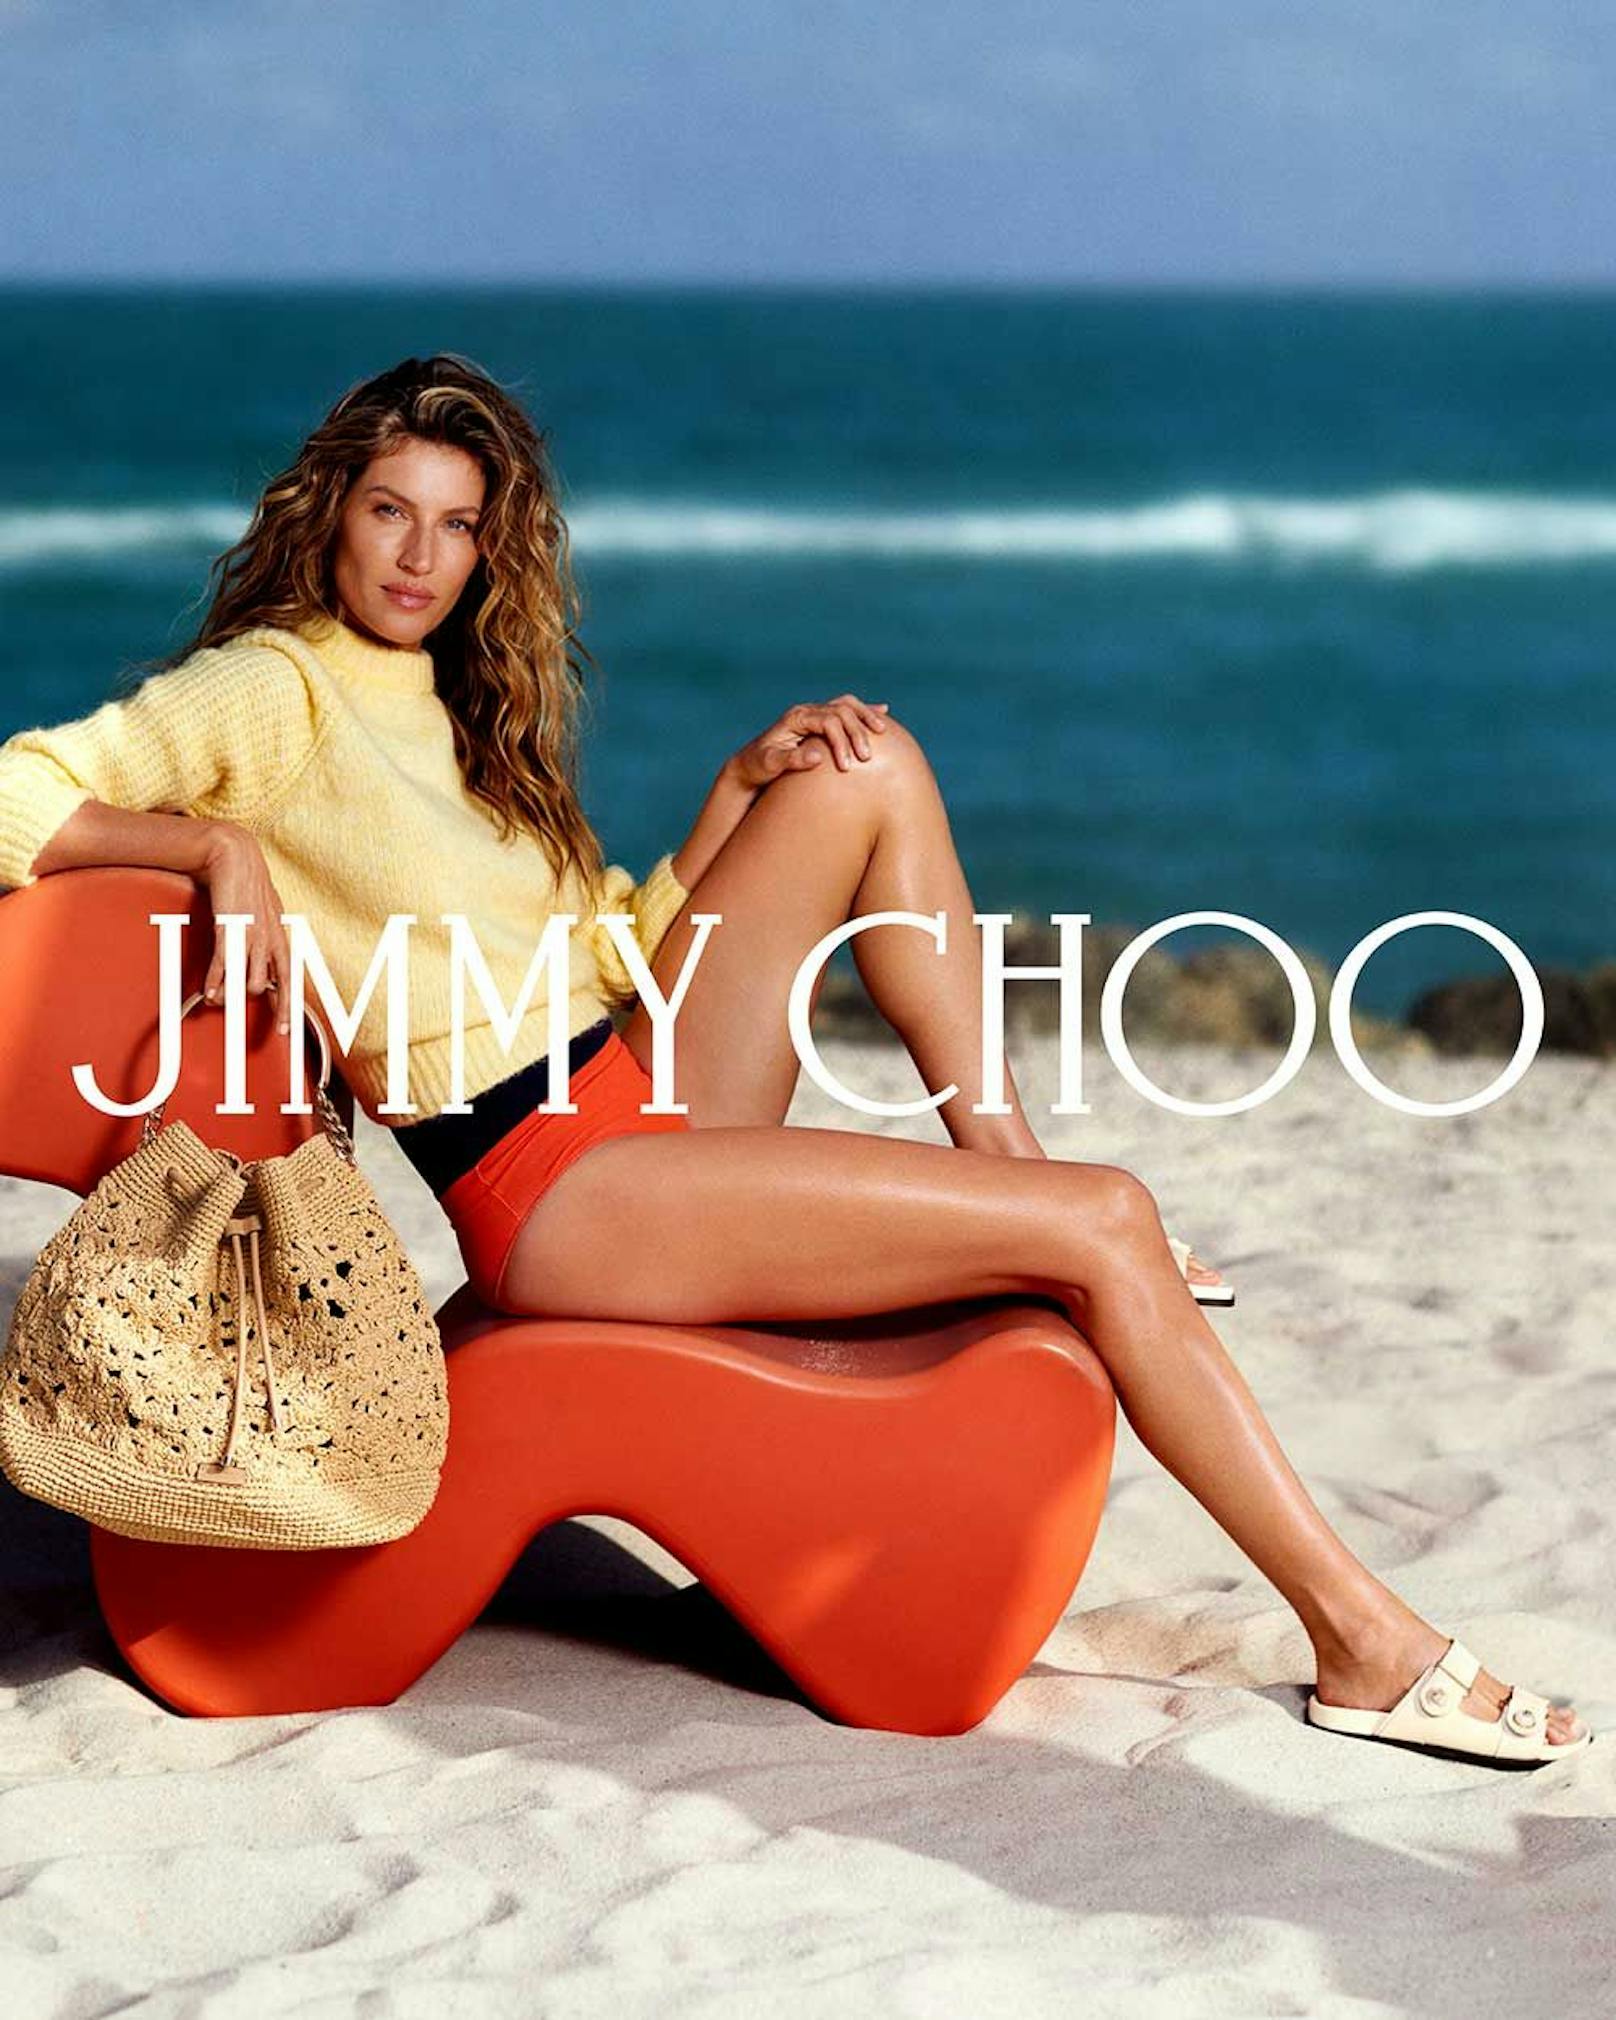 Das brasilianische Supermodel Gisele Bündchen versprüht am Strand Sommer-Feeling pur. Wer schaut da noch auf die Birkenstock Look-a-likes?&nbsp;